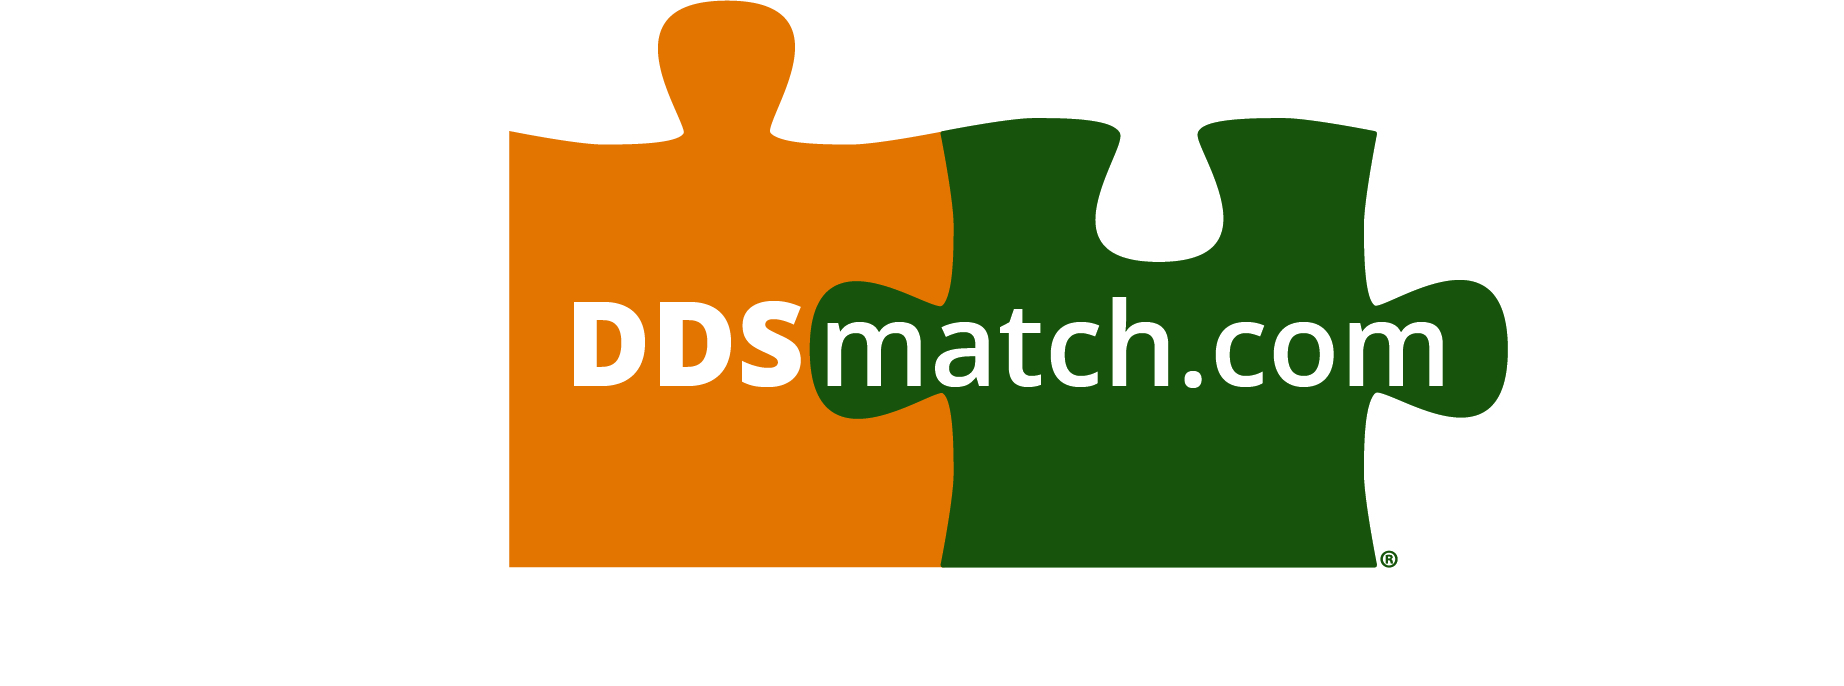 ddsmatch.com - Jeremy Keck Logo